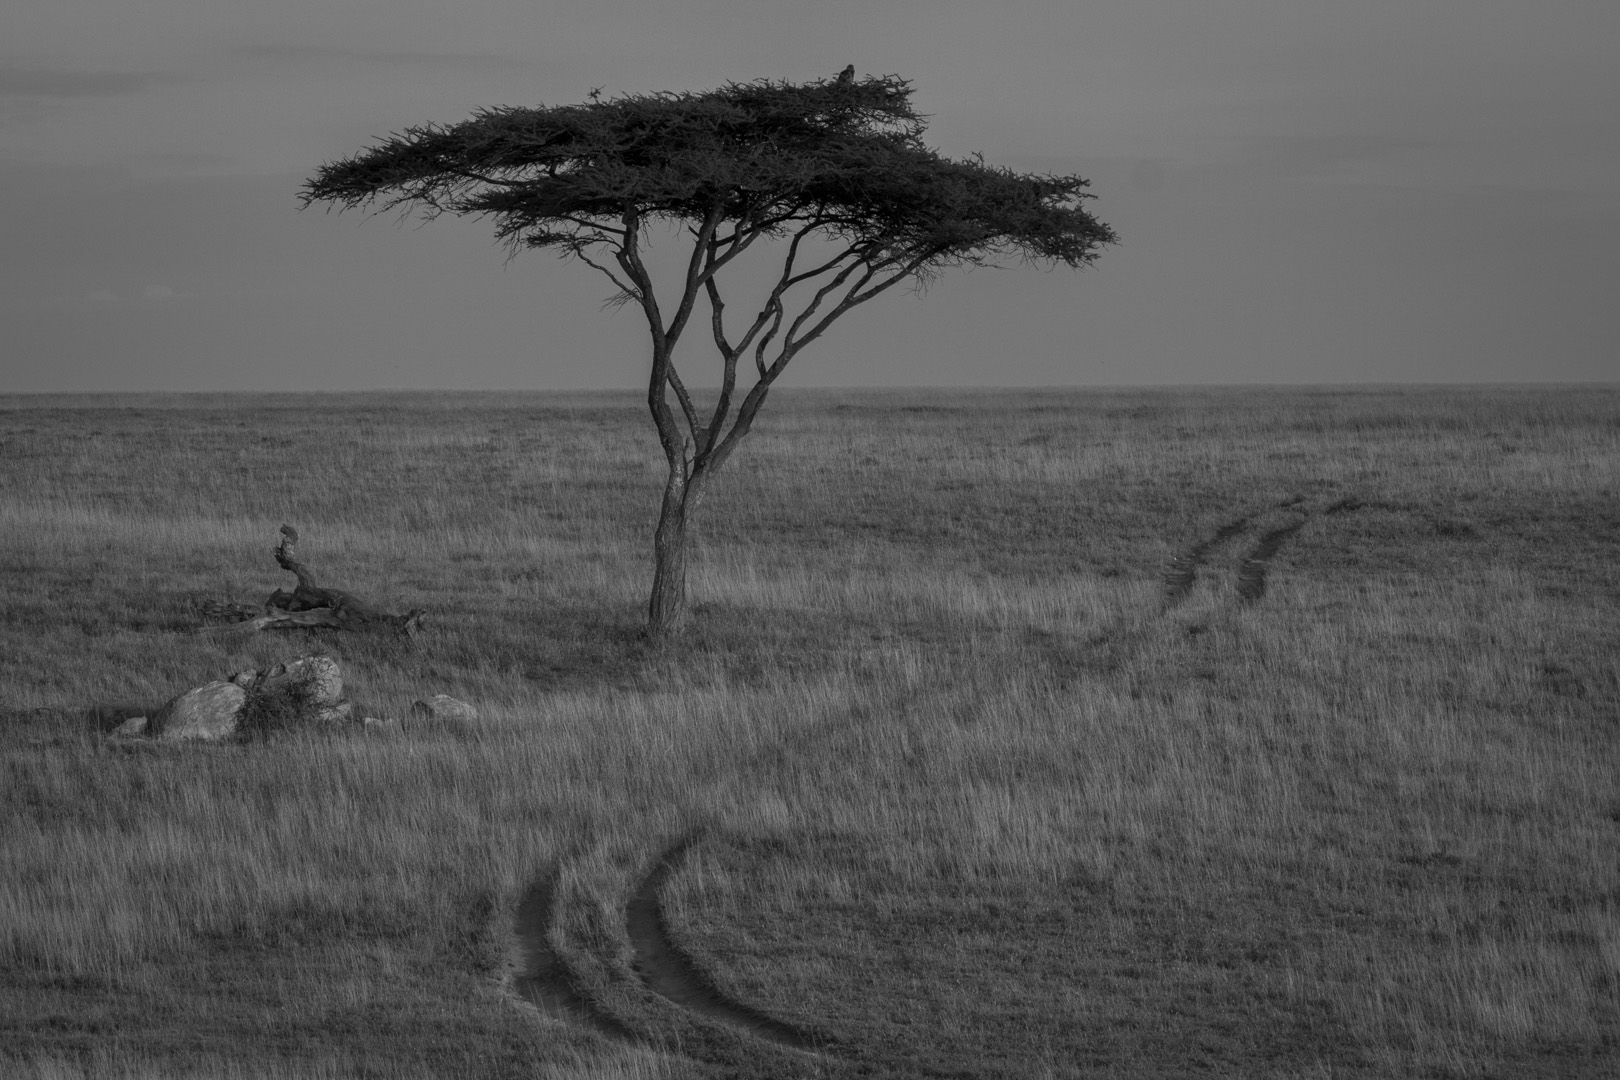  Serengeti National Park 